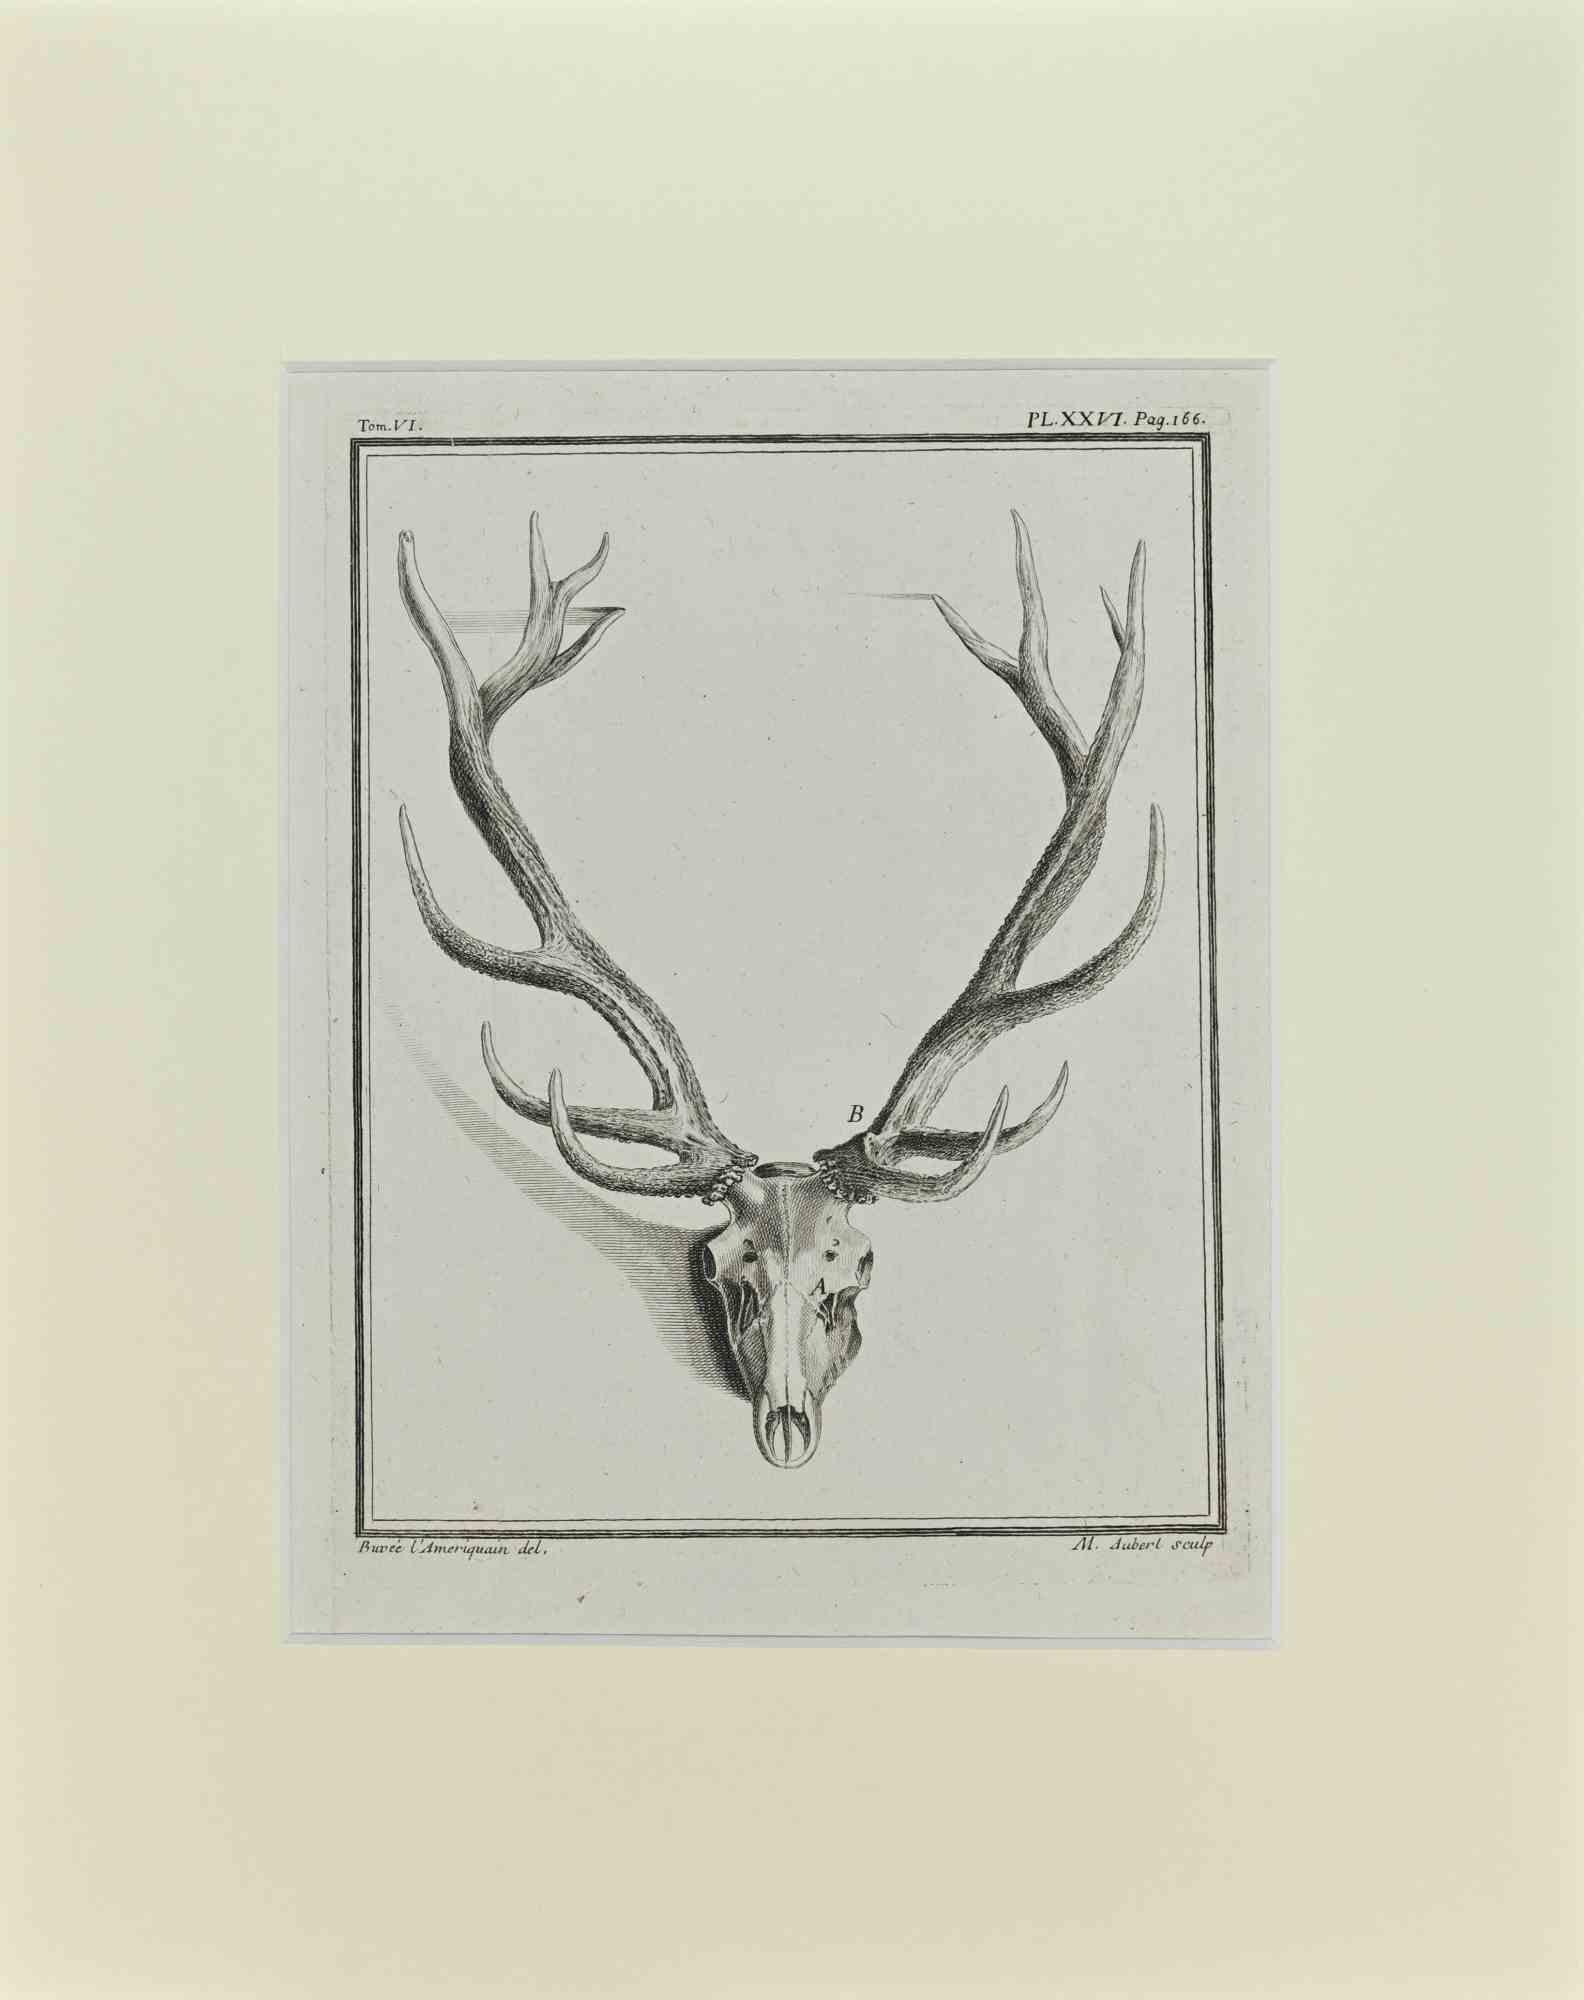 Cornes de cerf est une œuvre d'art réalisée par Buvée l'Américain en 1771.  

Gravure à l'eau-forte B./W. sur papier ivoire. Signé sur la plaque dans la marge inférieure gauche.

L'œuvre est collée sur du carton. Dimensions totales : 35x28